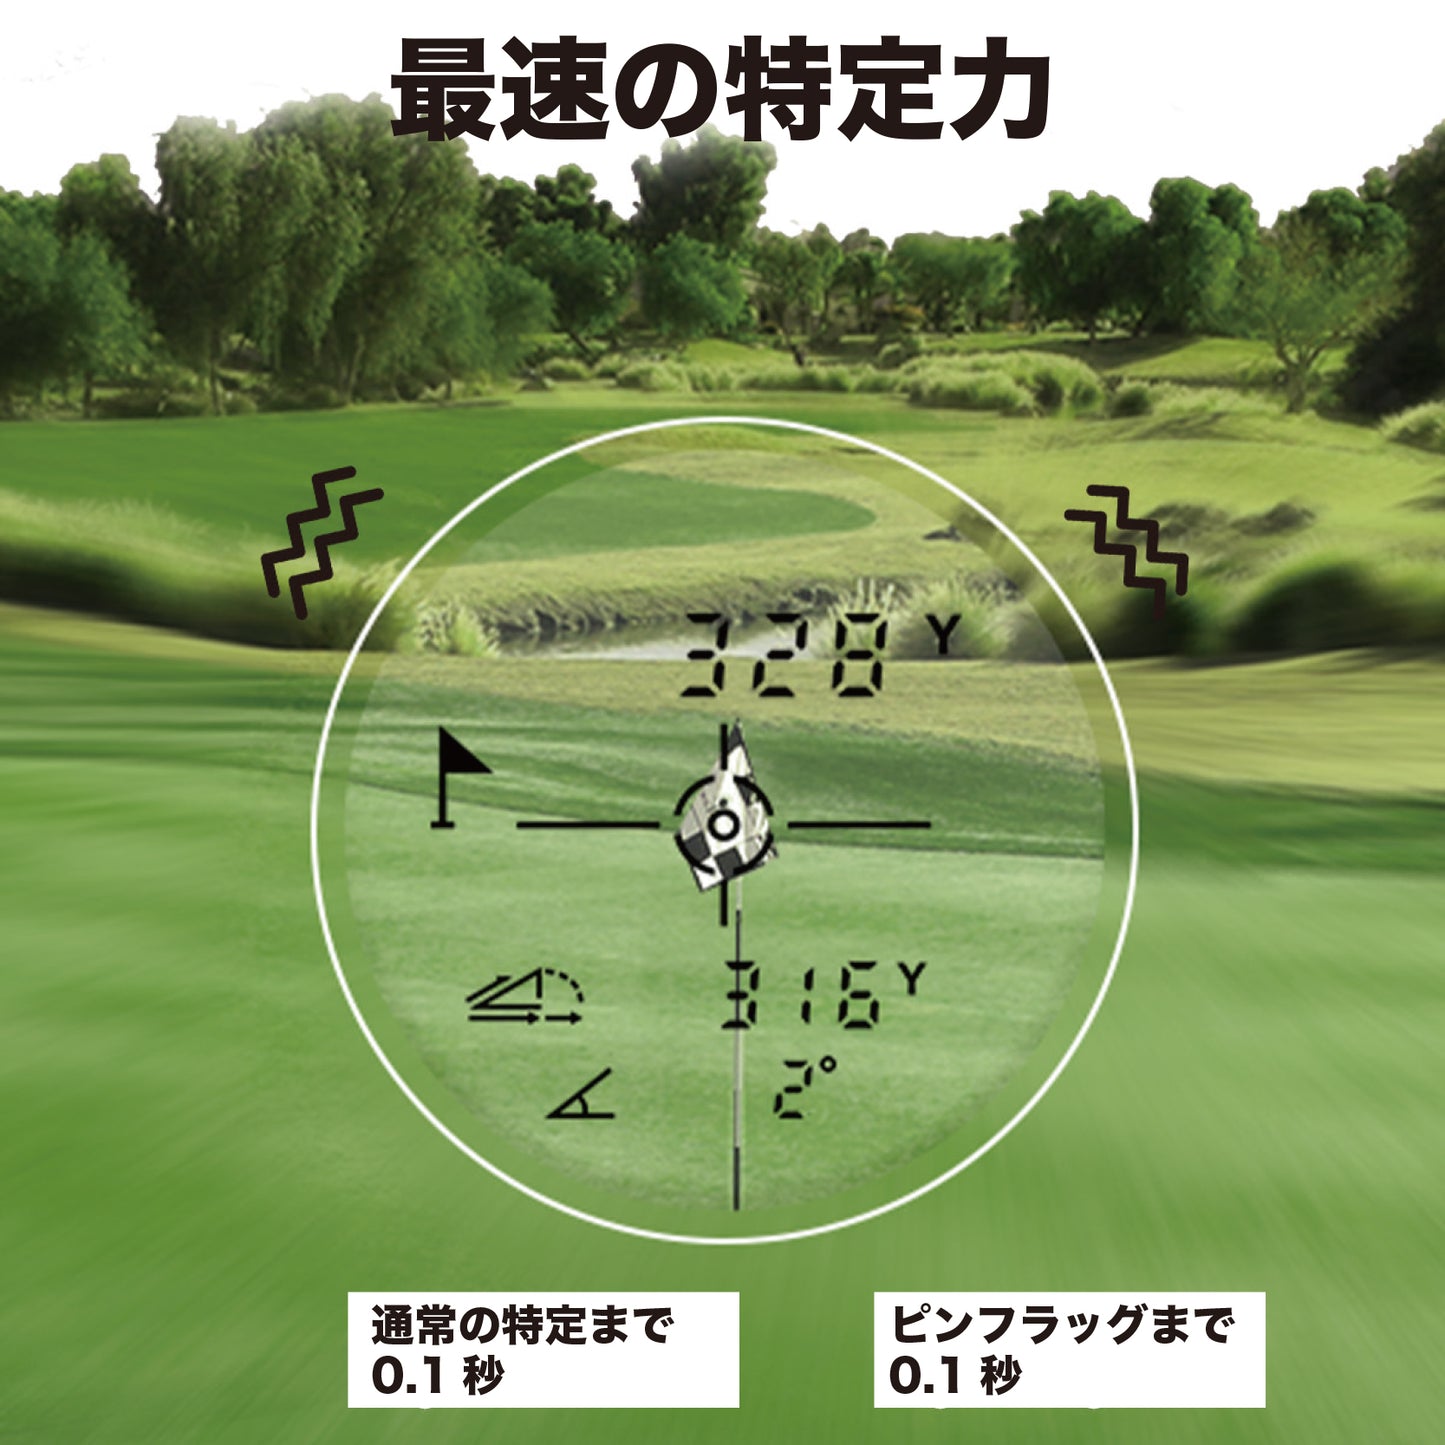 ゴルフ距離計測器 レーザー golf range finder